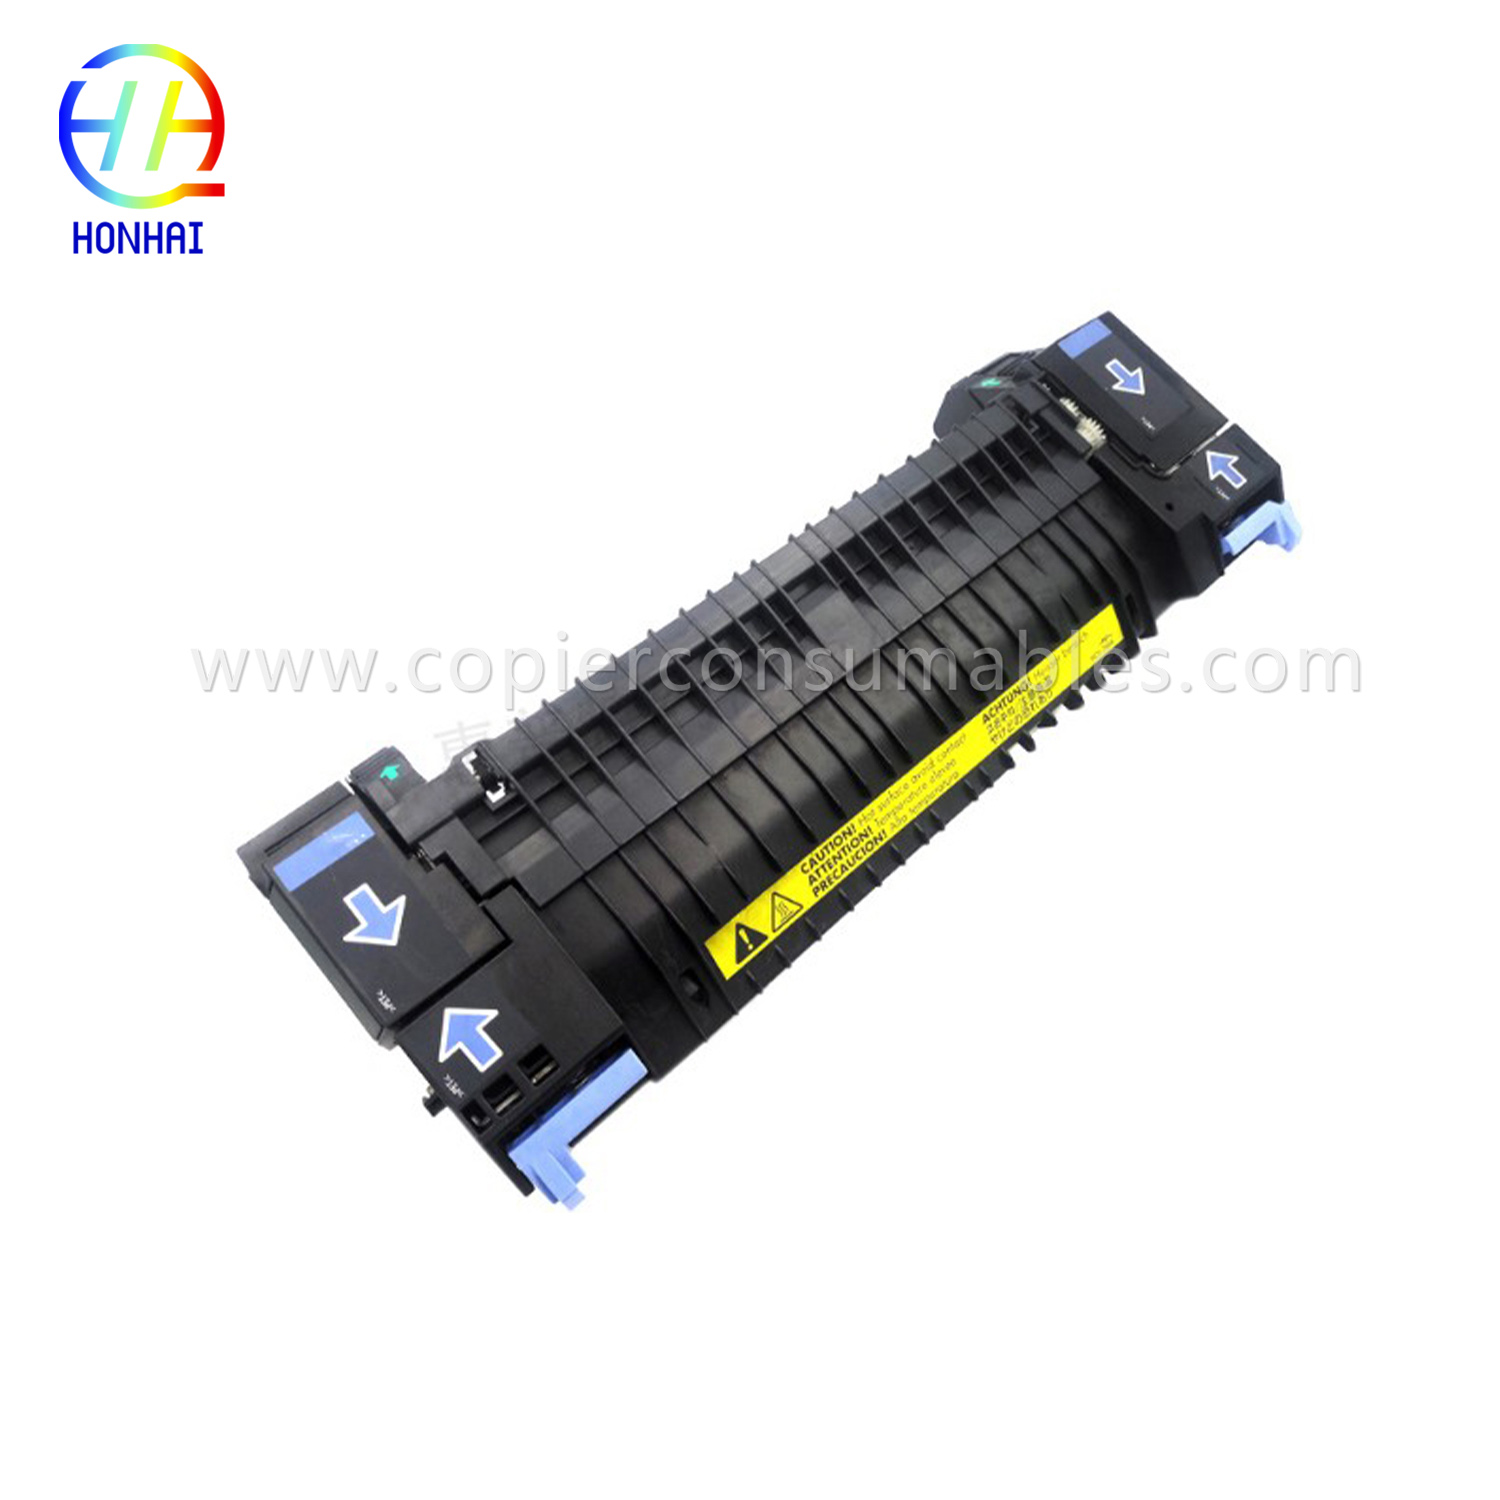 Pemasangan Fuser untuk HP Color LaserJet 2700 3000 3600 3800 CP3505 (RM1-4348 RM1-2763 RM1-2665) 拷贝